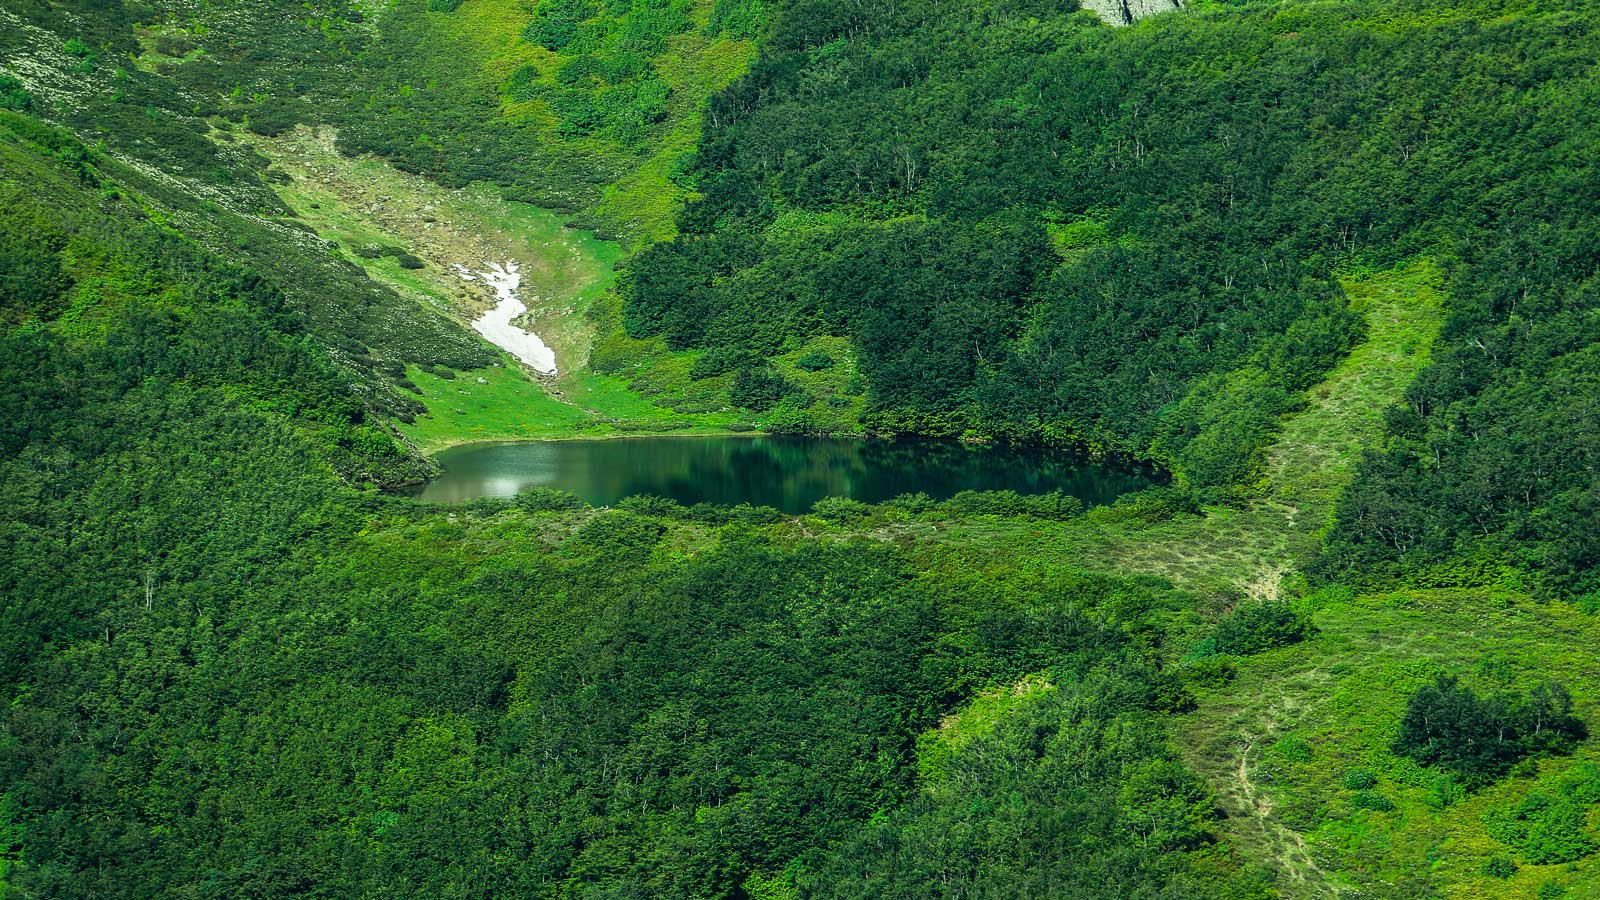 Žaliasis ežeras and Makhuntseti krioklys